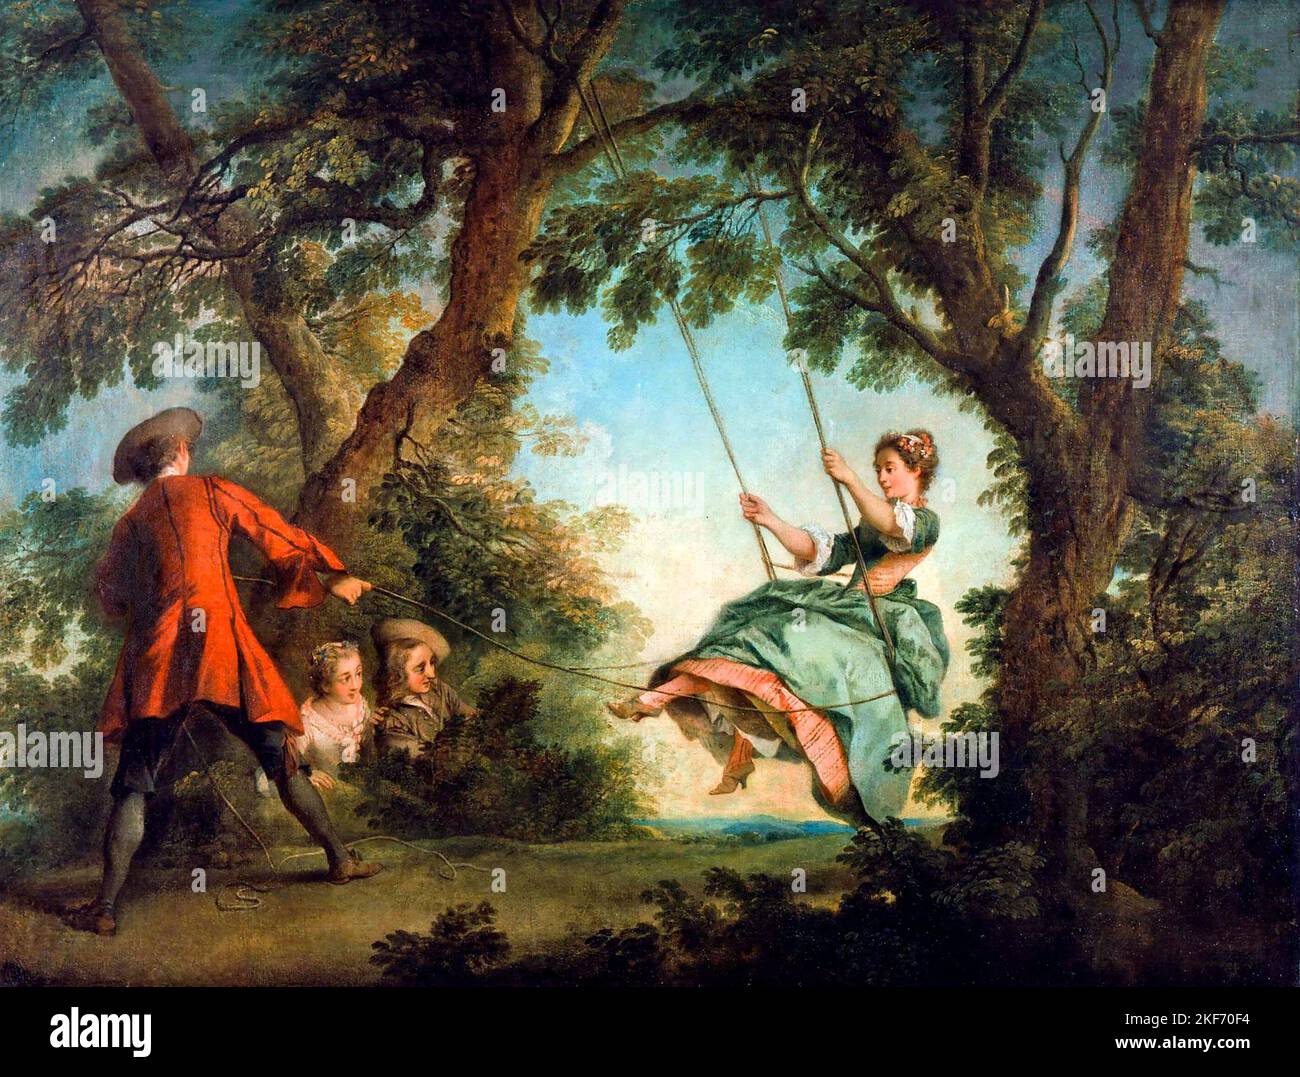 The Swing par l'artiste français Nicolas Lancert (1690-1743), huile sur toile, c. 1730-35 Banque D'Images